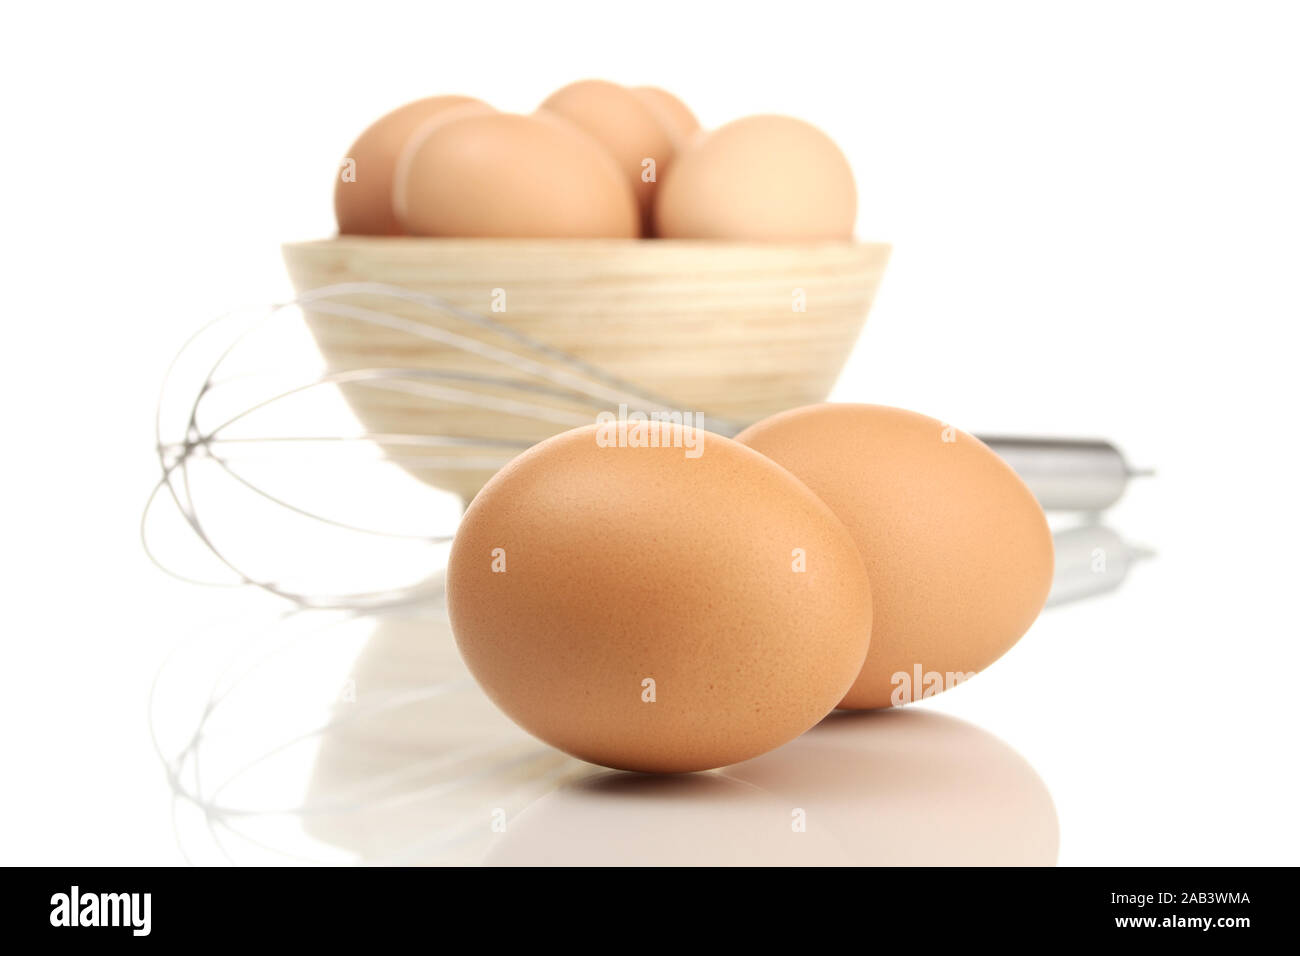 Schüssel mit Eier und einem Schneebesen |Bowl with eggs and a whisk| Stock Photo